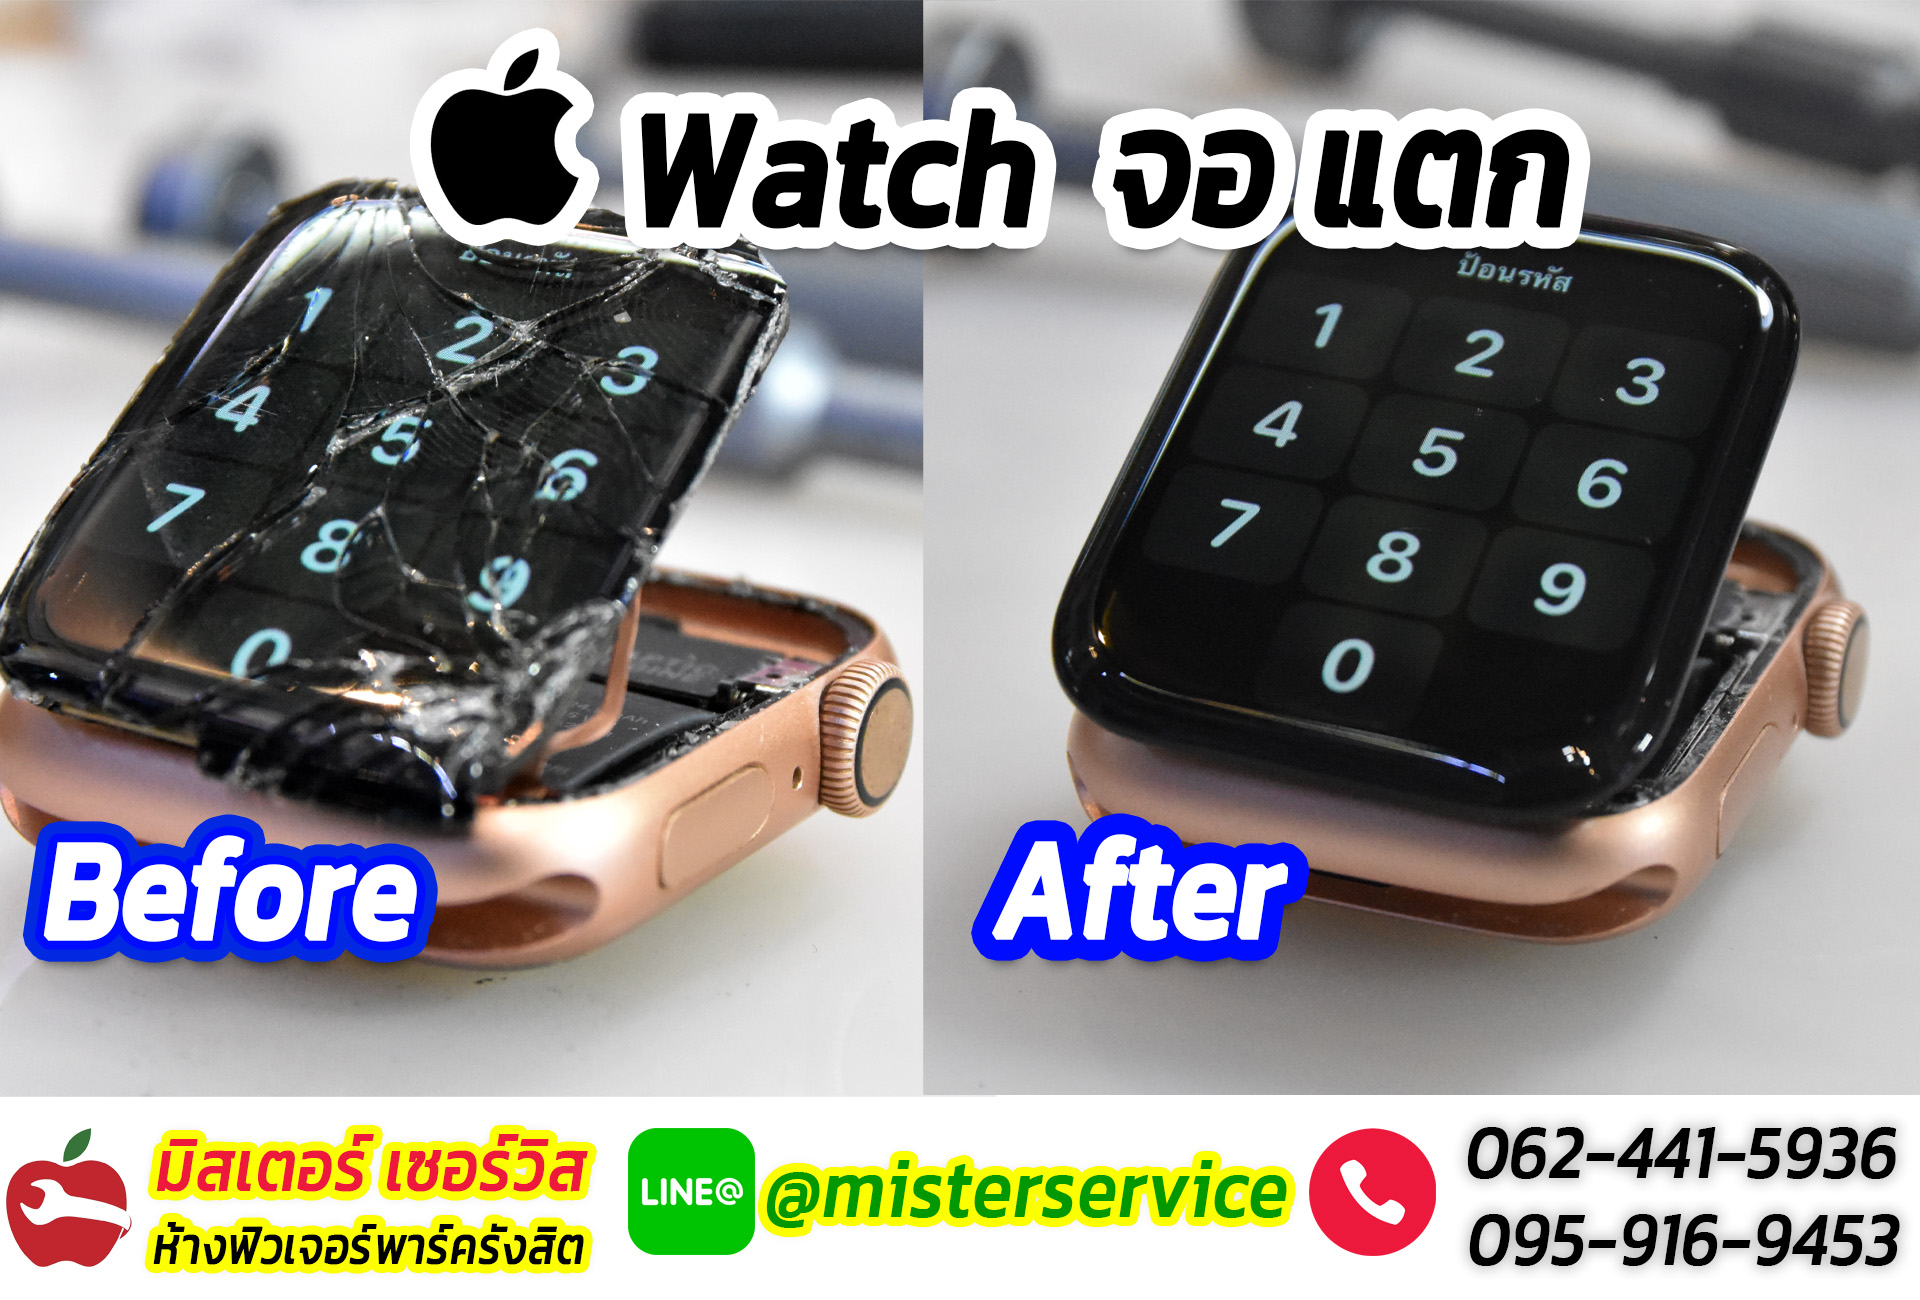 ซ่อม Apple Watch สมุทรปราการ